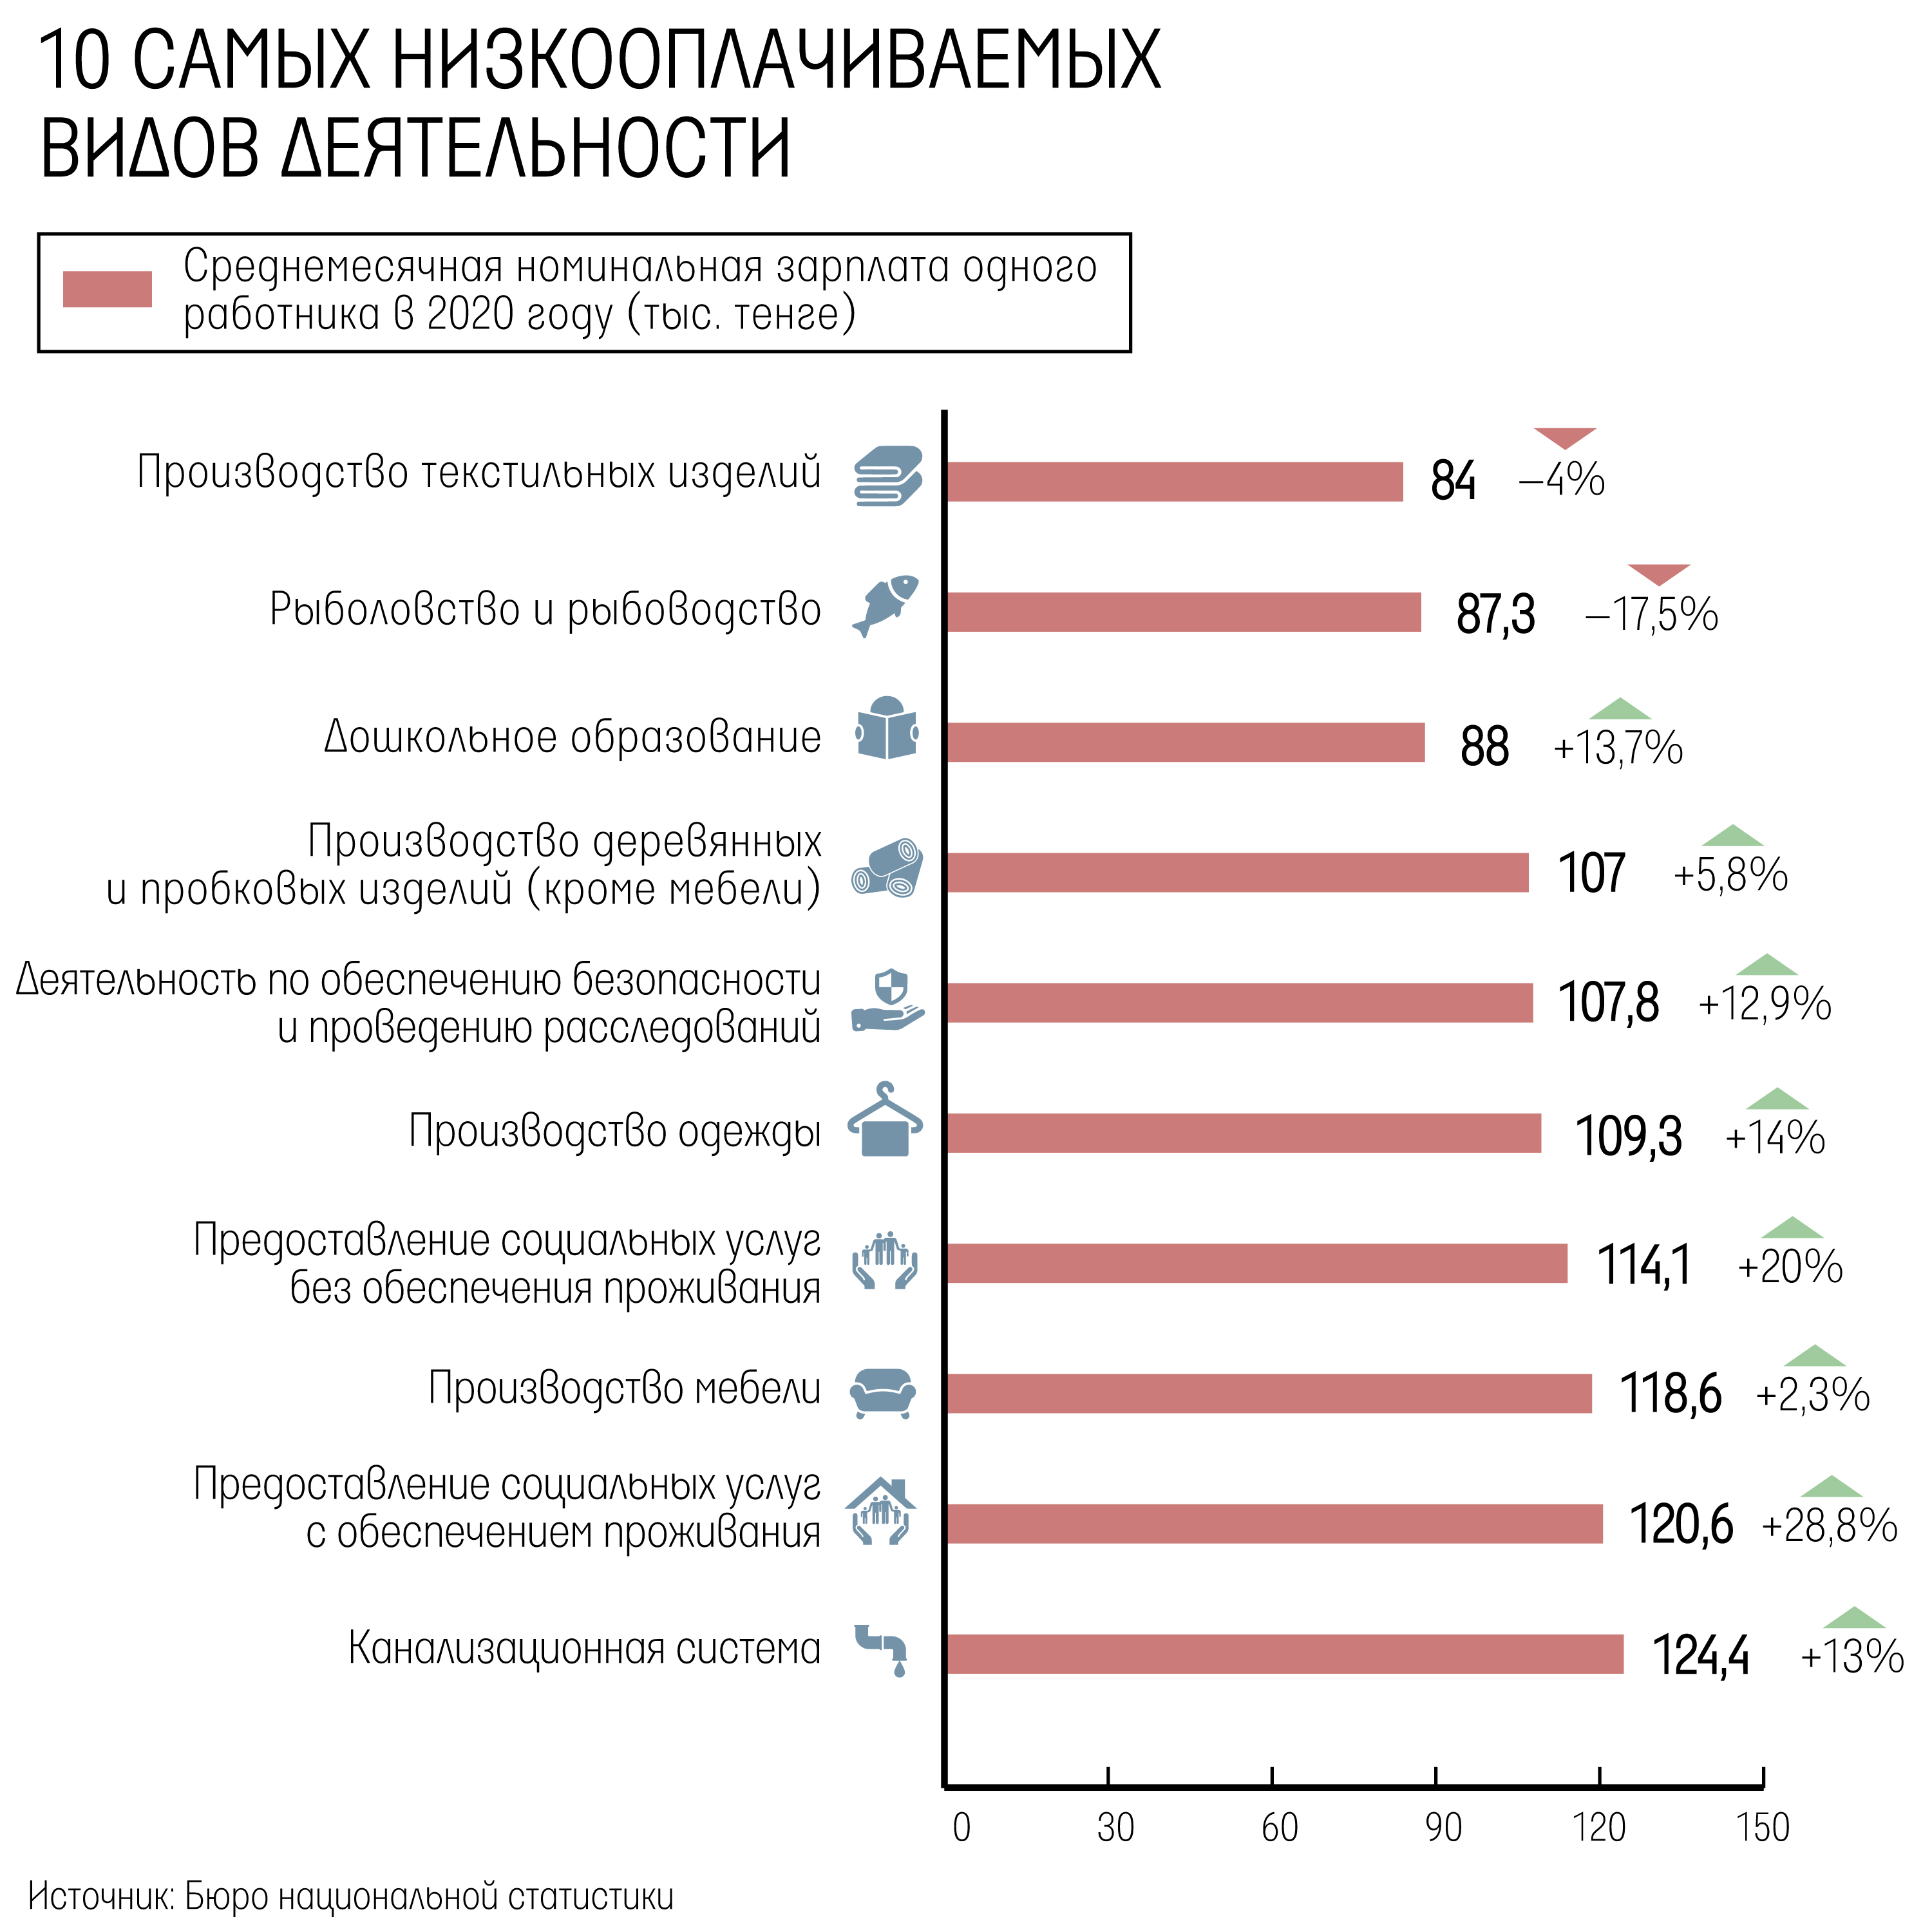 Рейтинг самых высокооплачиваемых профессий в россии